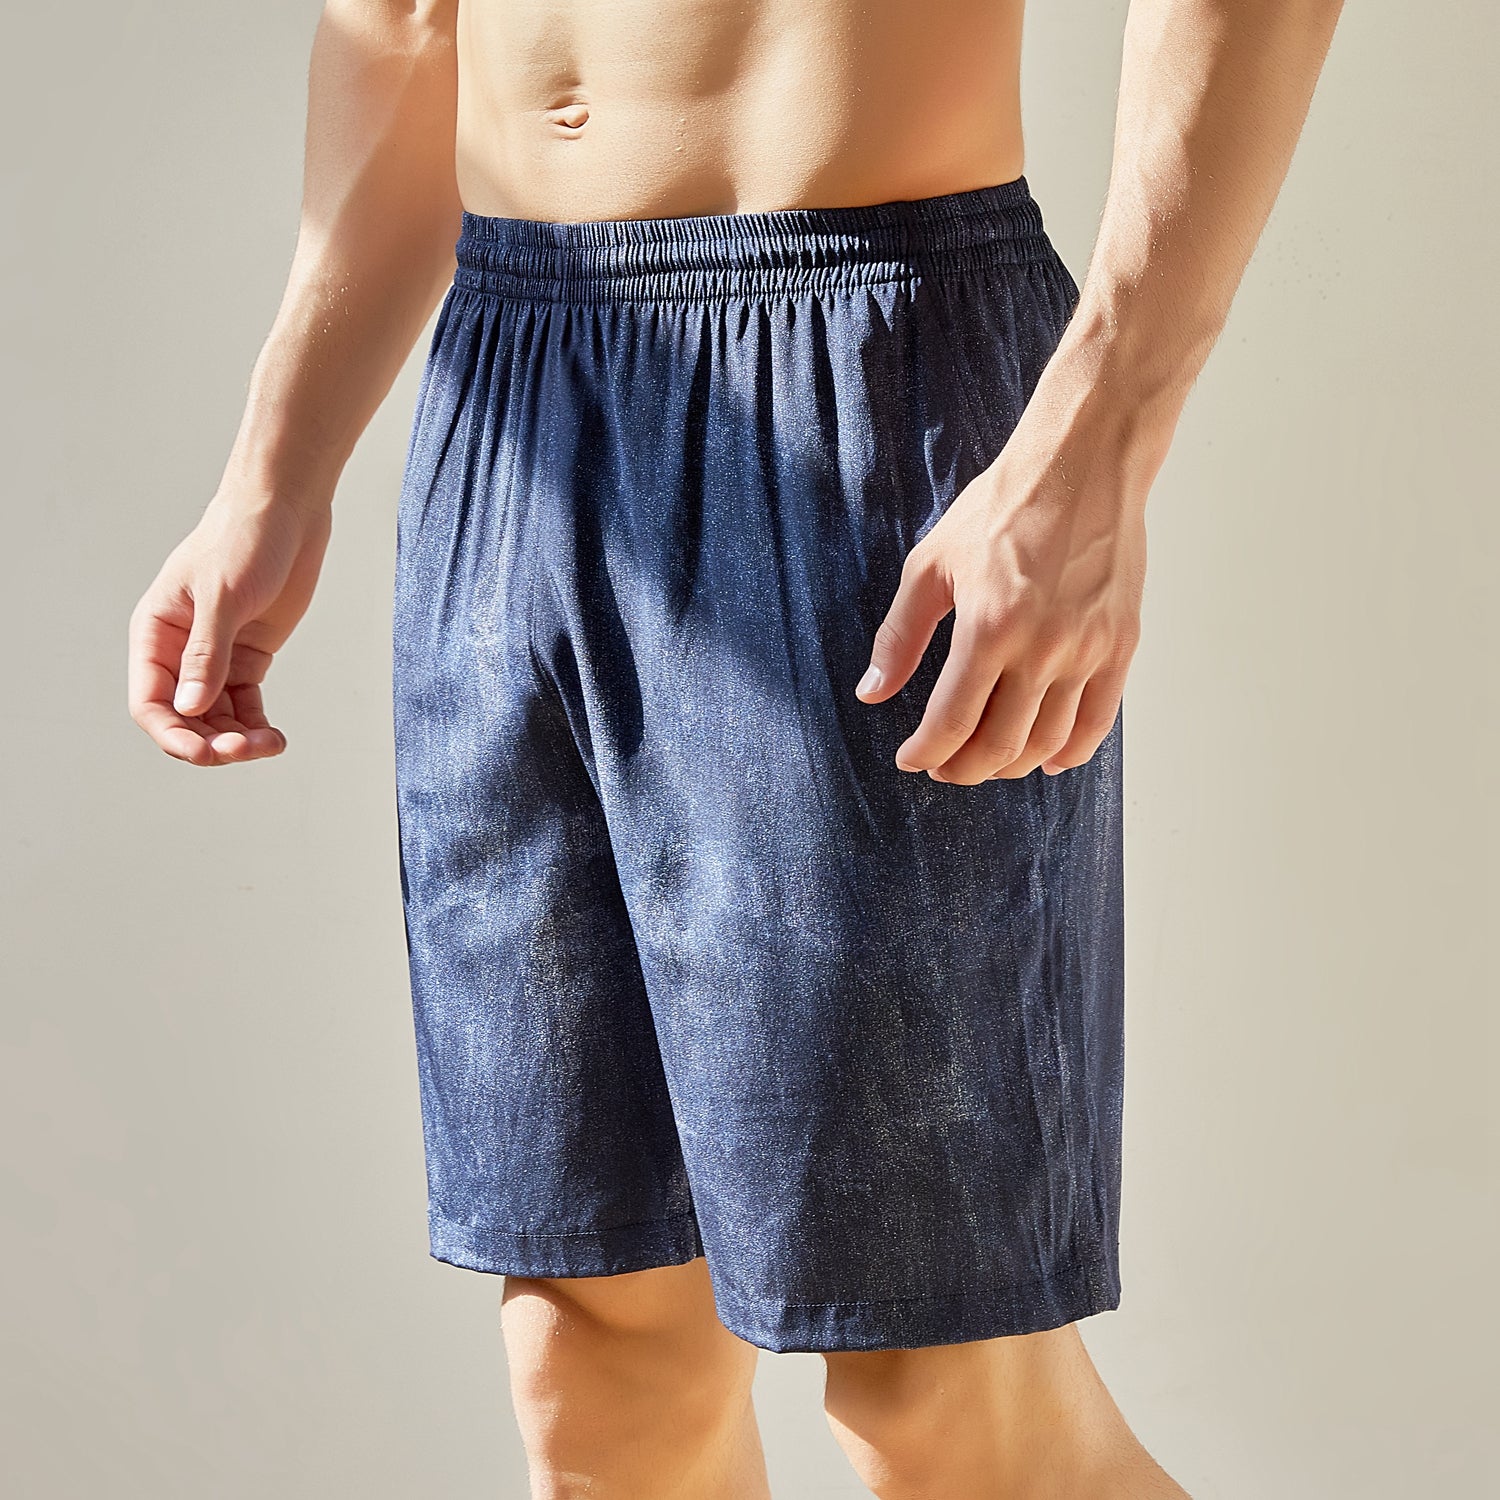 XWSM 3PCS 100% Mulberry Silk Briefs Underpants Underwear Shorts